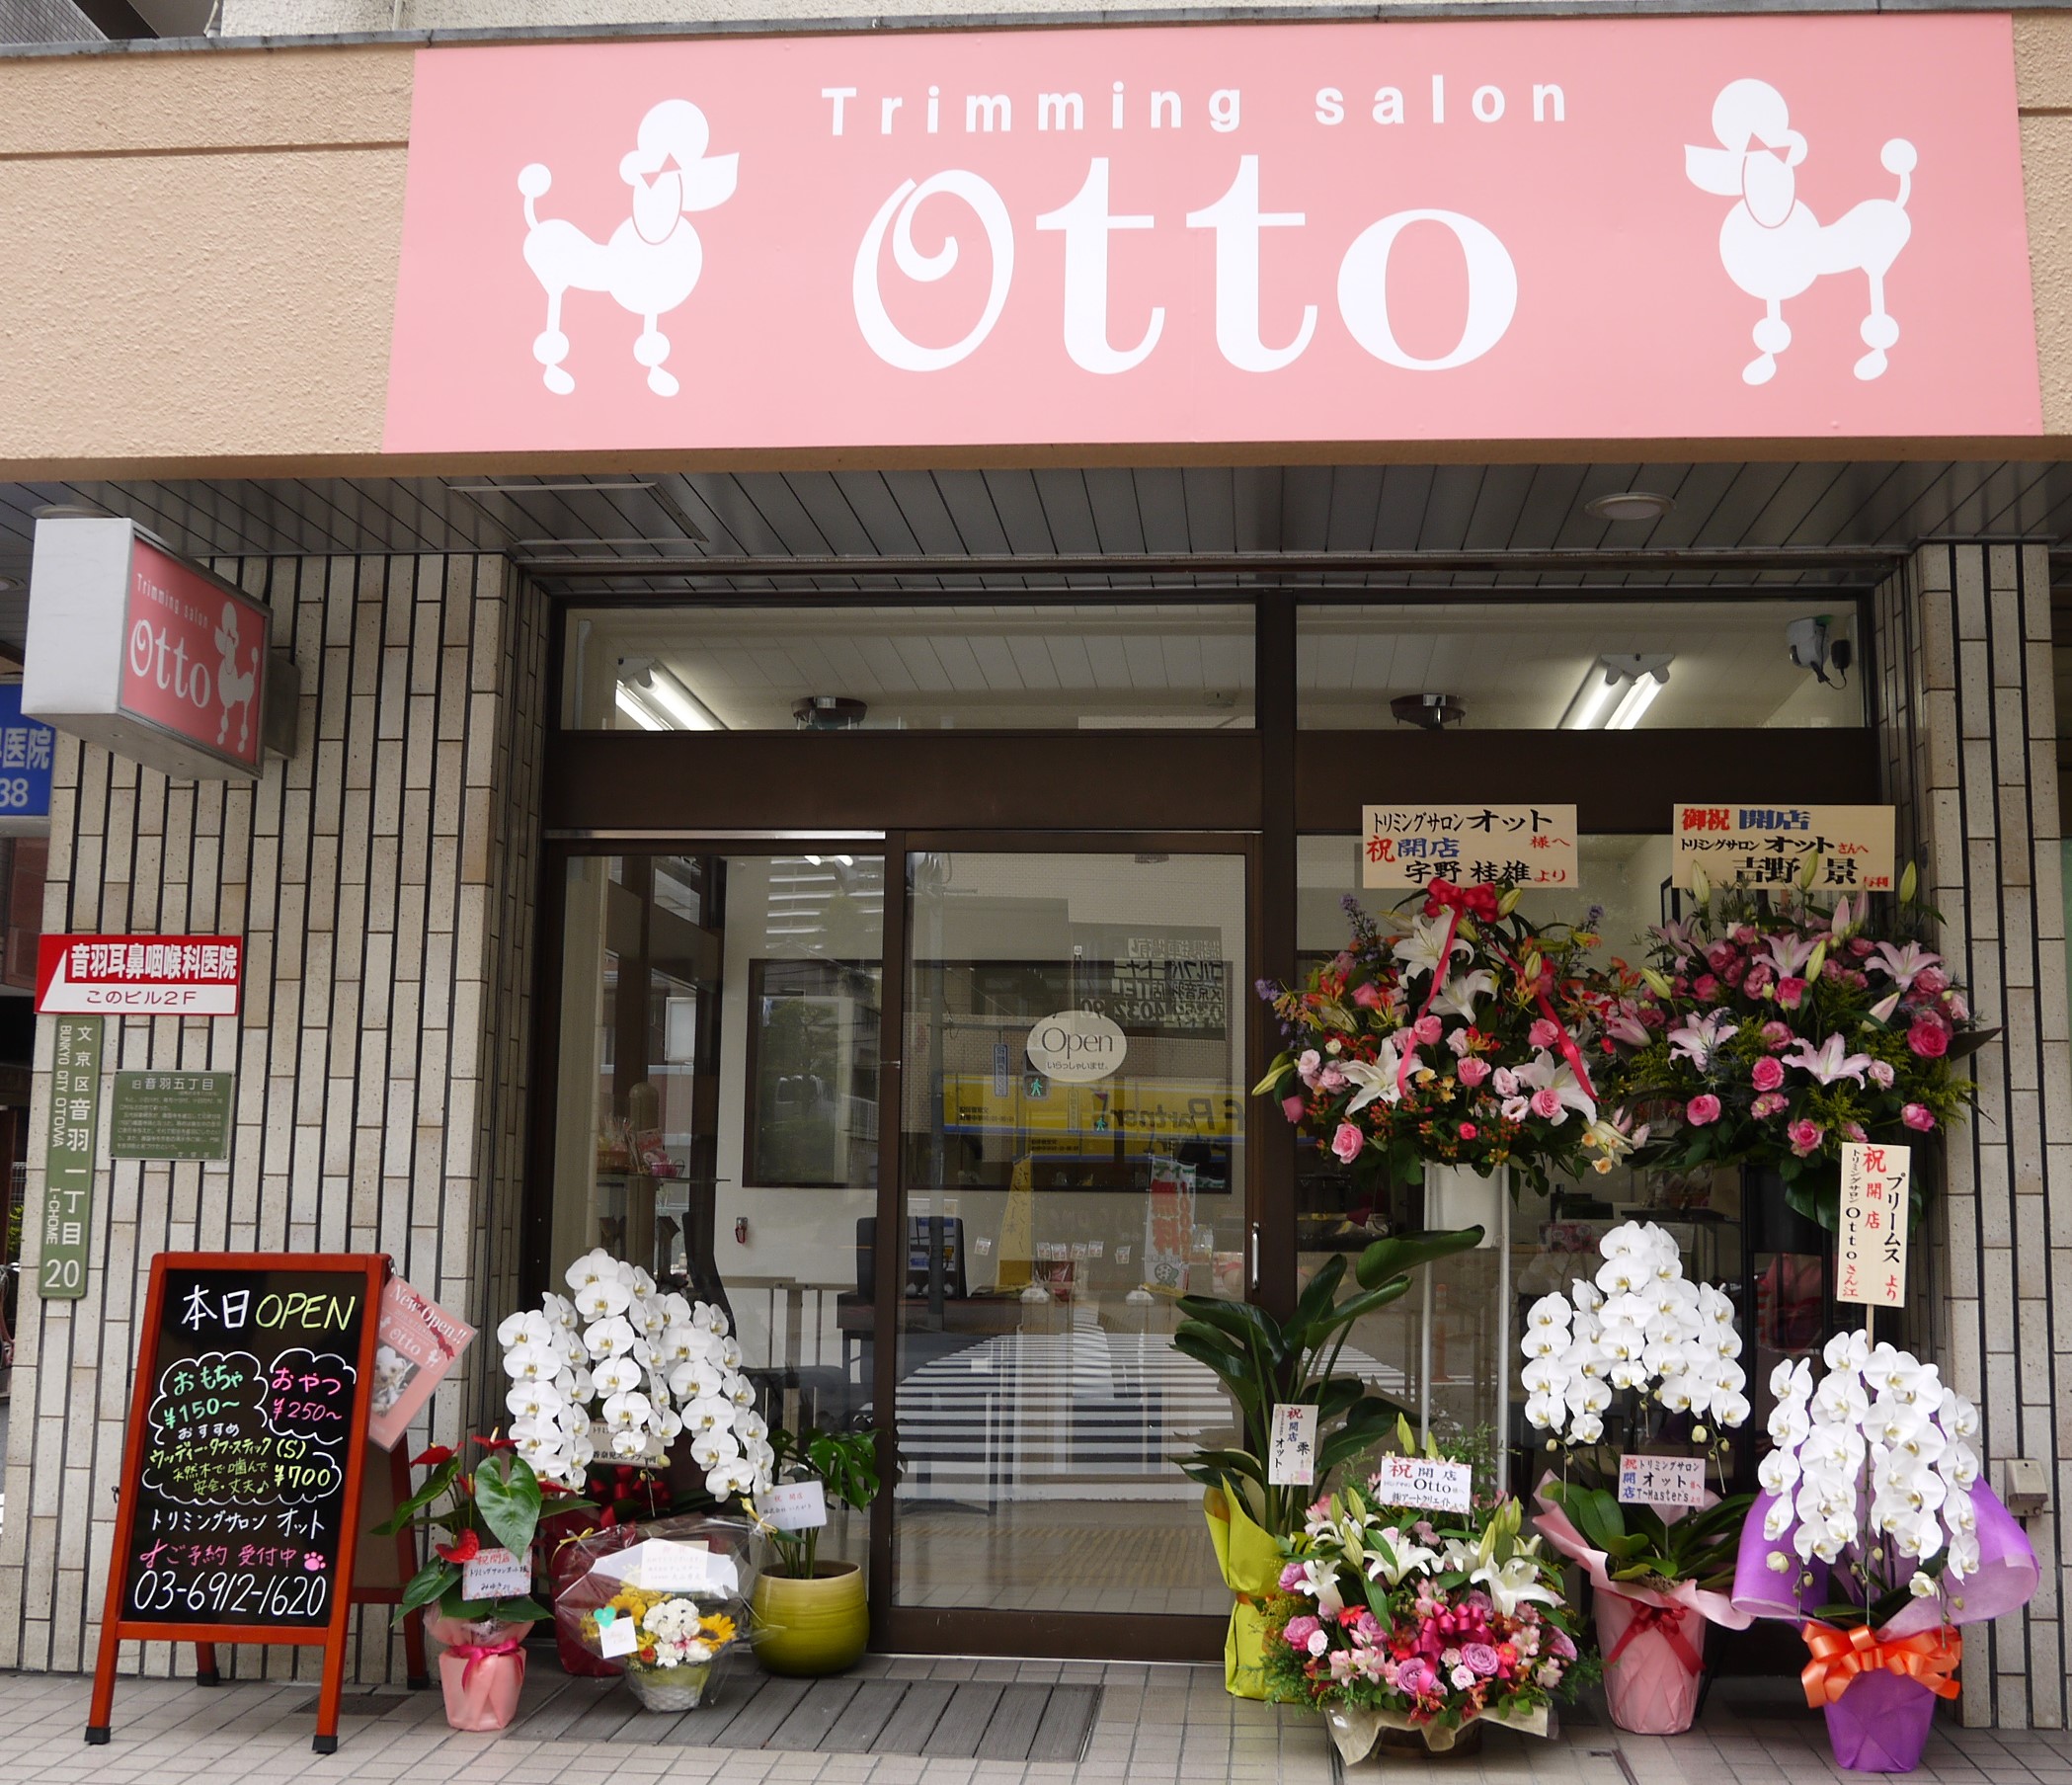 東京都文京区のトリミングサロン trimming salon Ottoのサムネイル1枚目